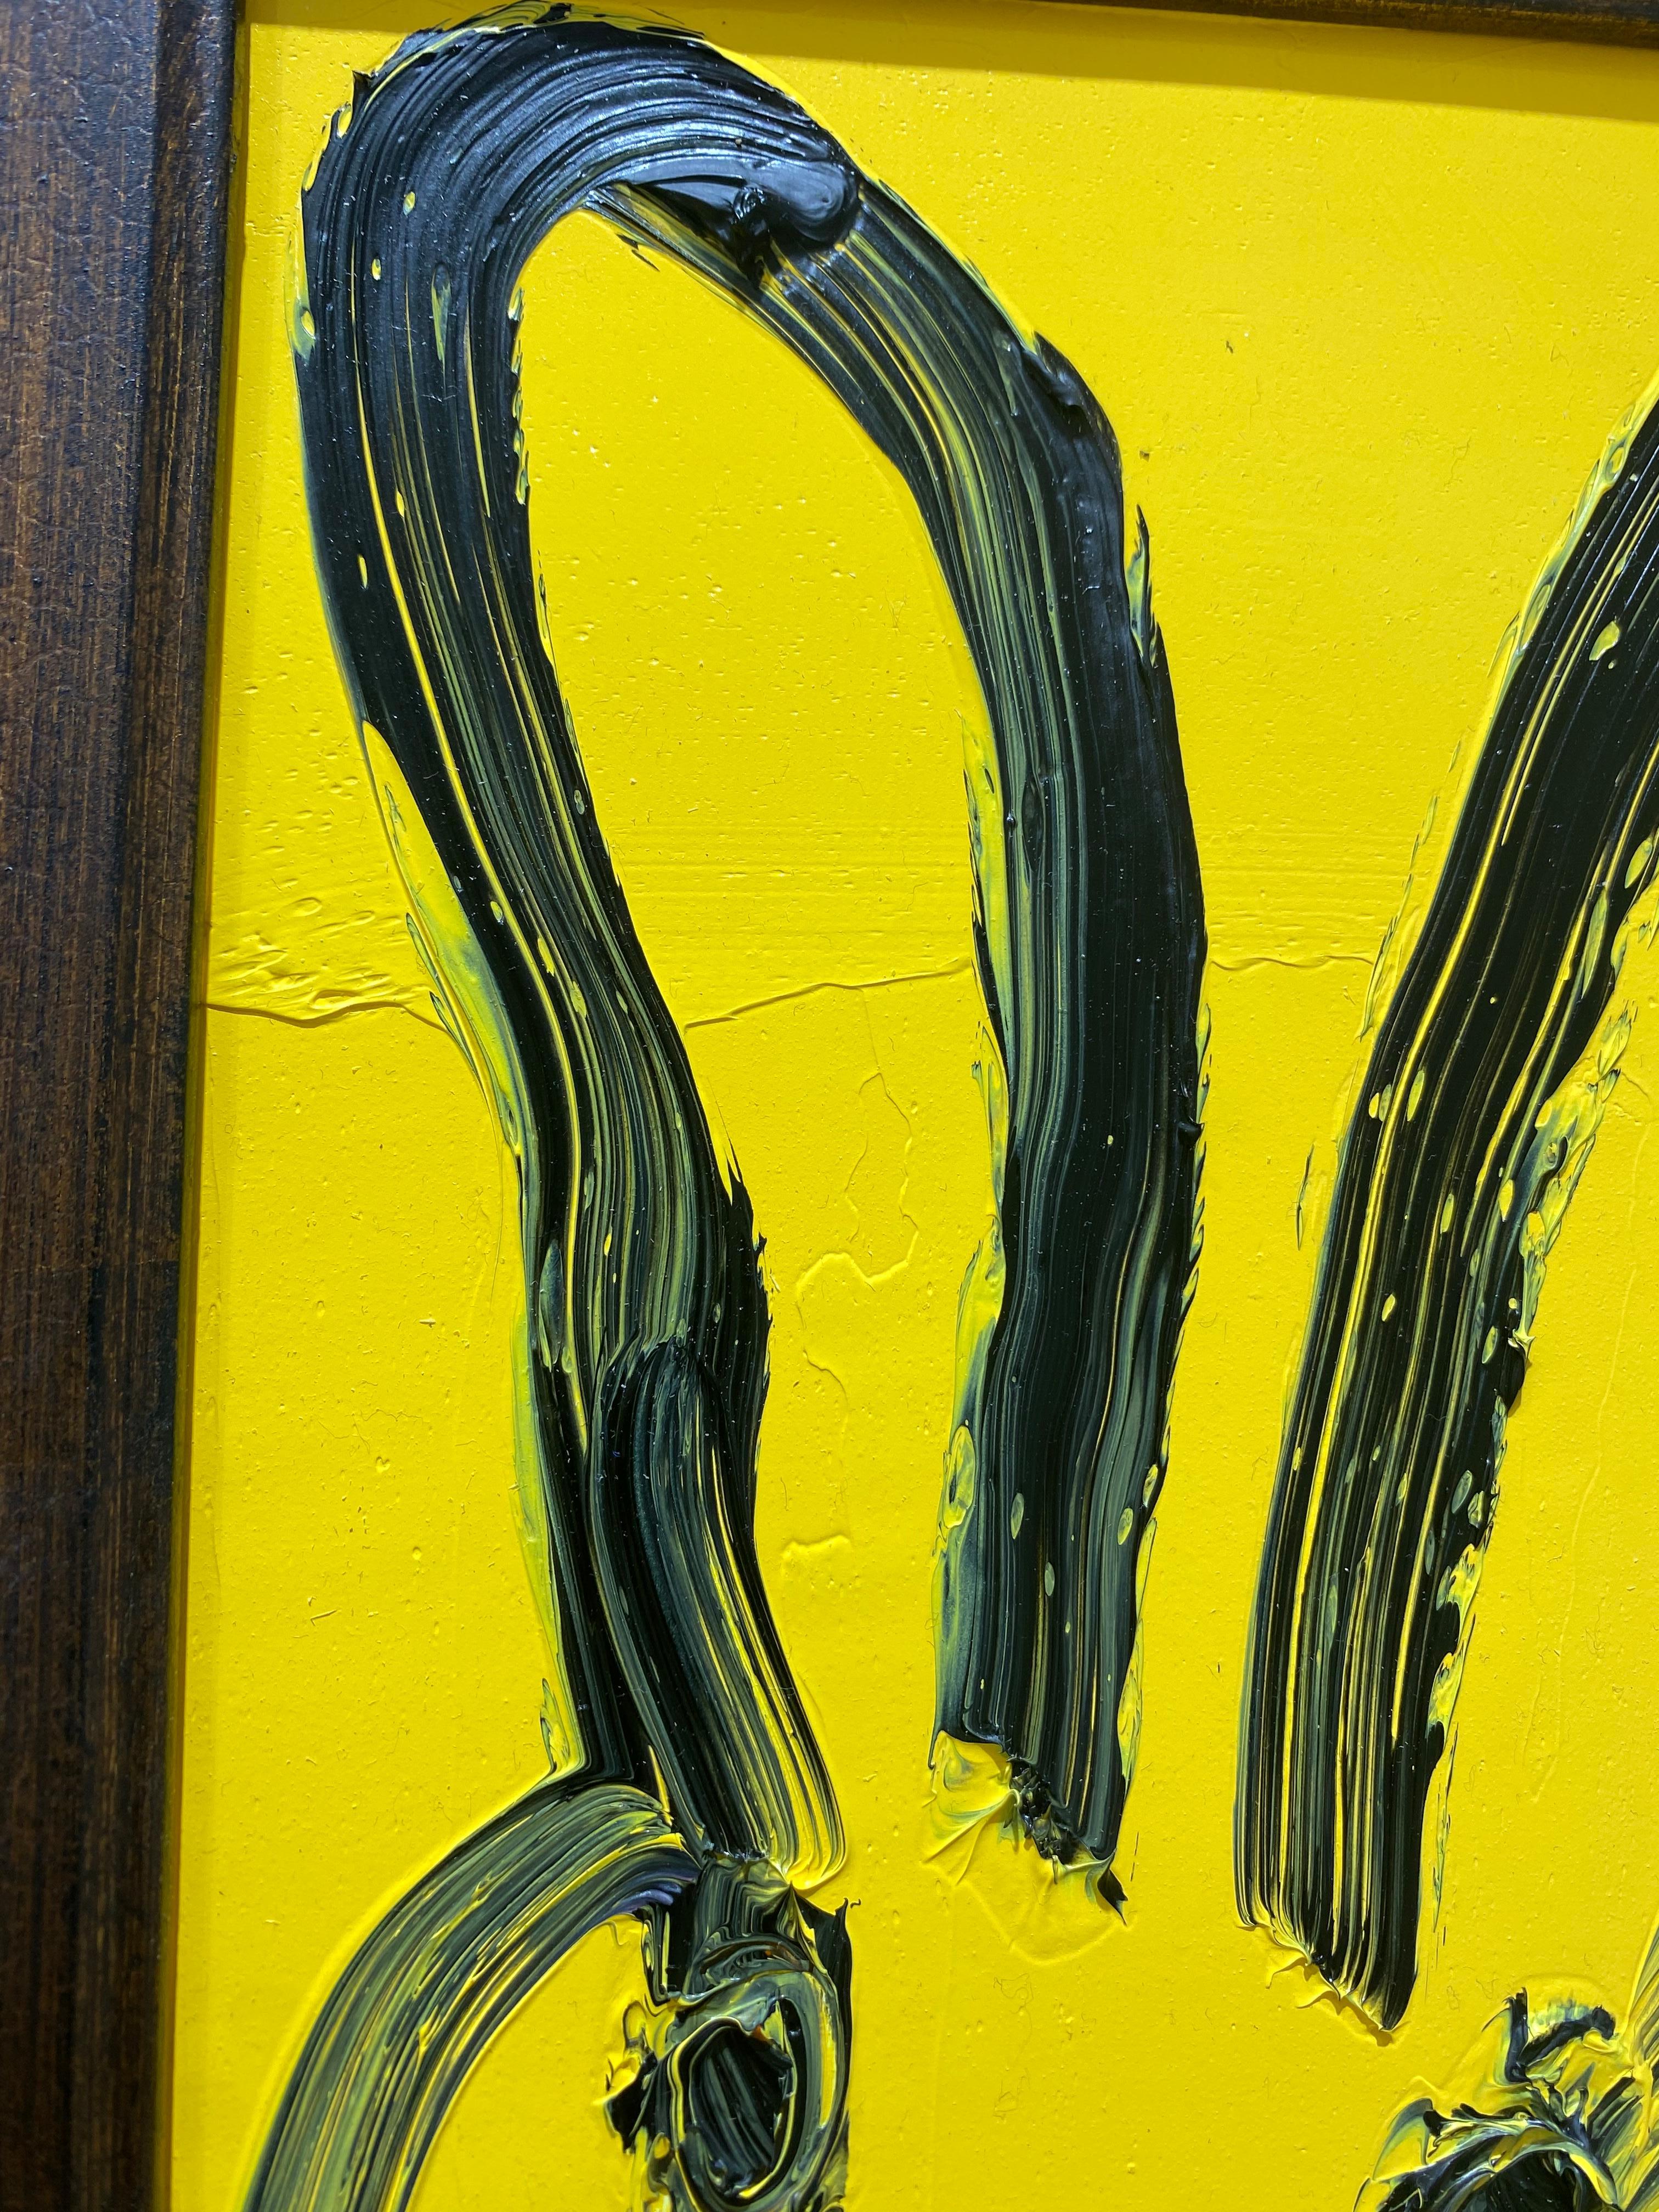 Jackie, 2022
Öl auf Holz
Schwarzer Umriss Hase, gelb

Vom Künstler gesammelter Rahmen
